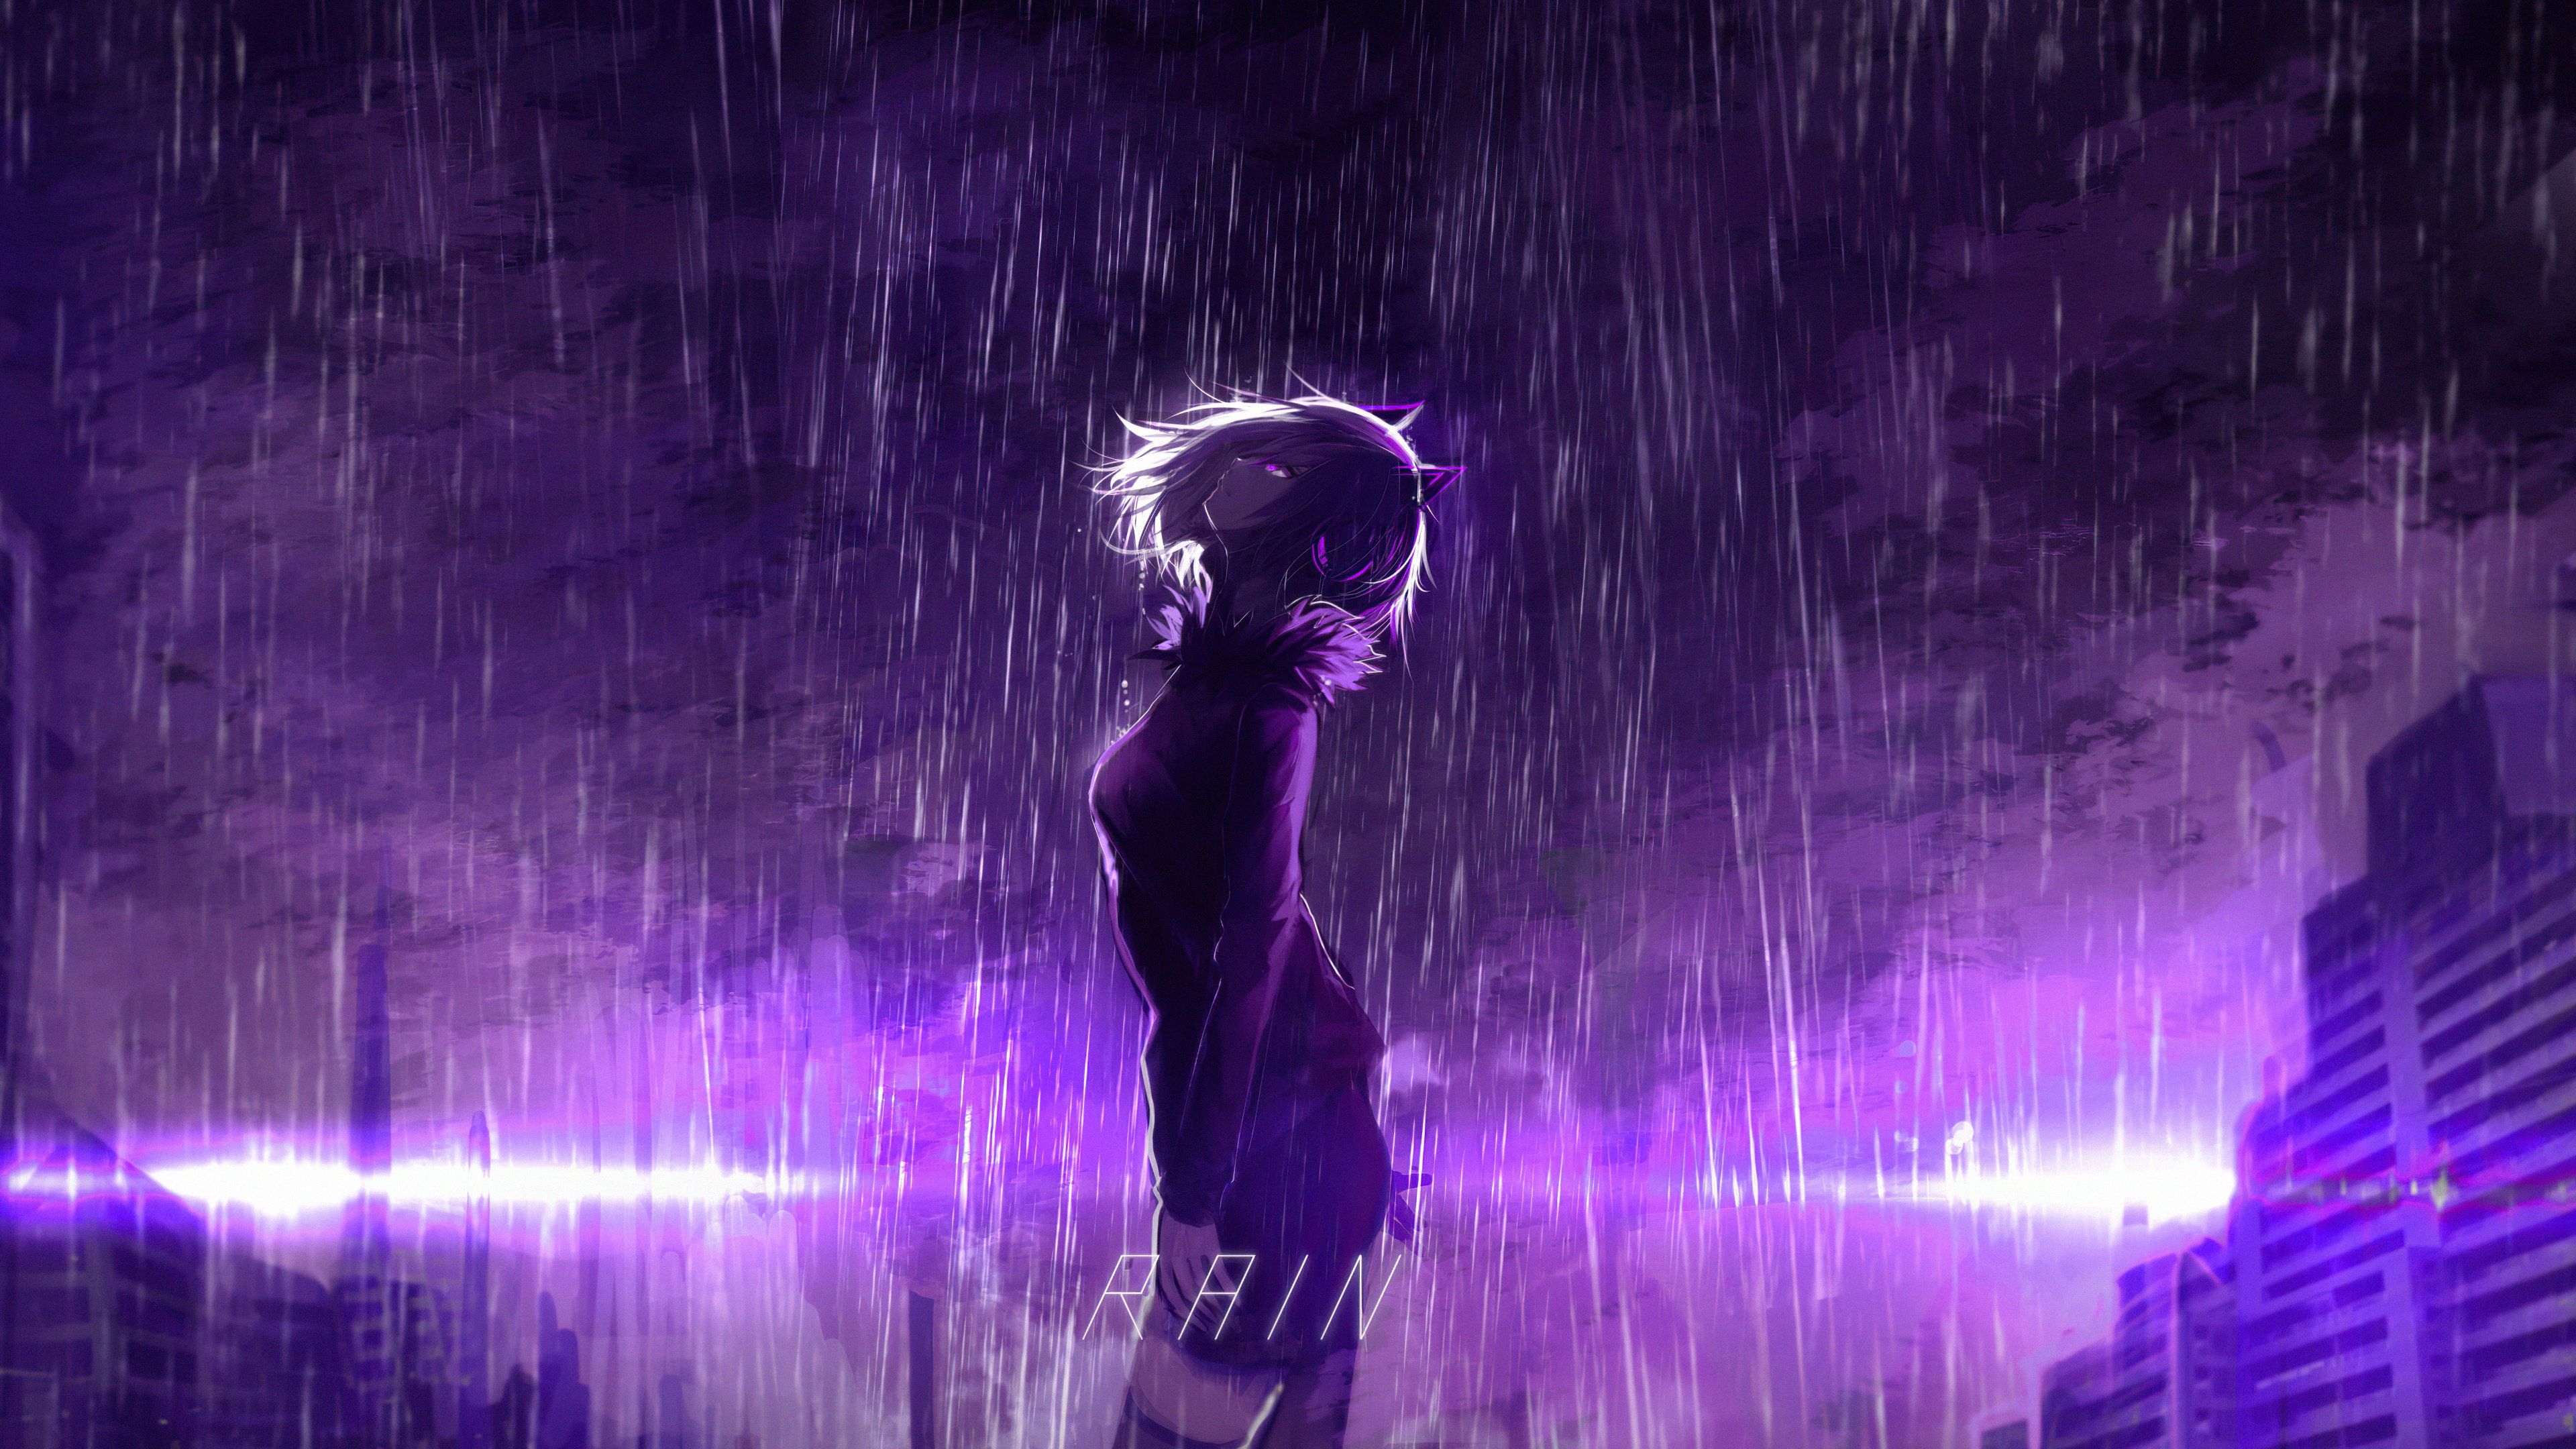 Aesthetic anime girl standing in the rain wallpaper 3840x2160 - Rain